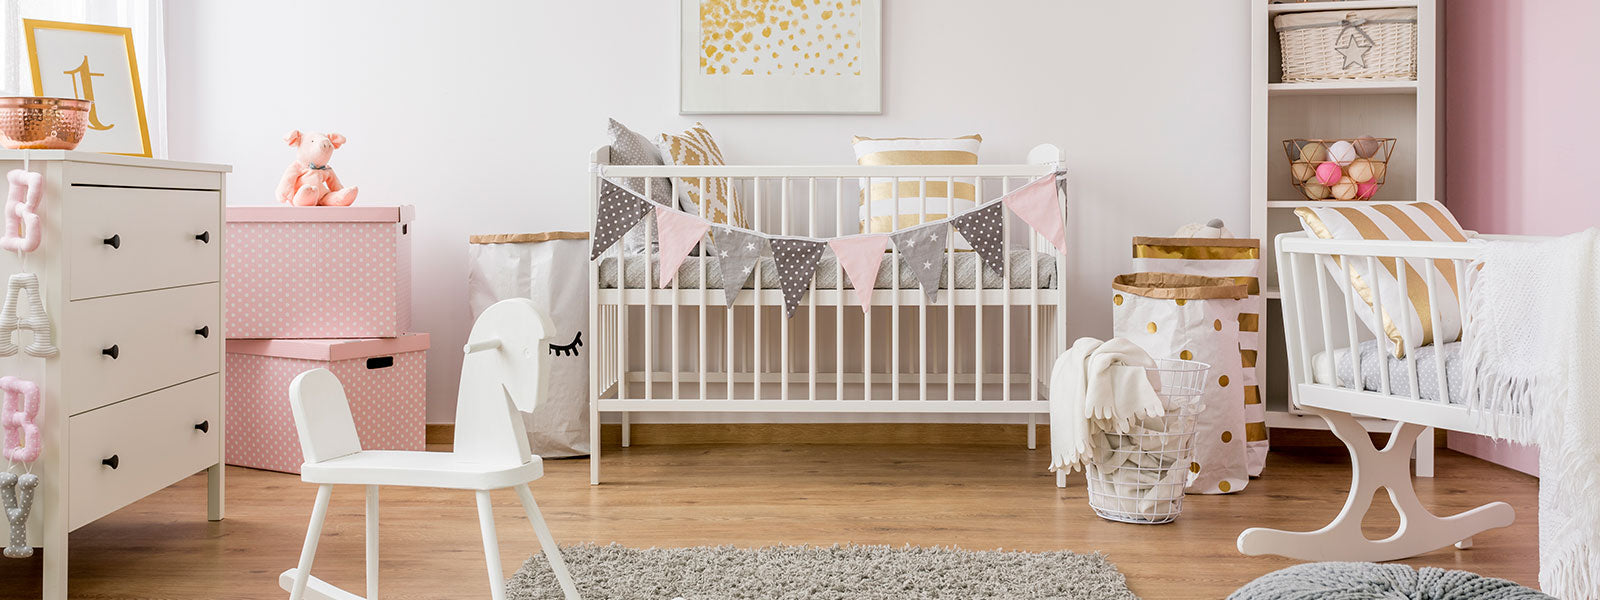 Chambre de bébé dans le style scandinave